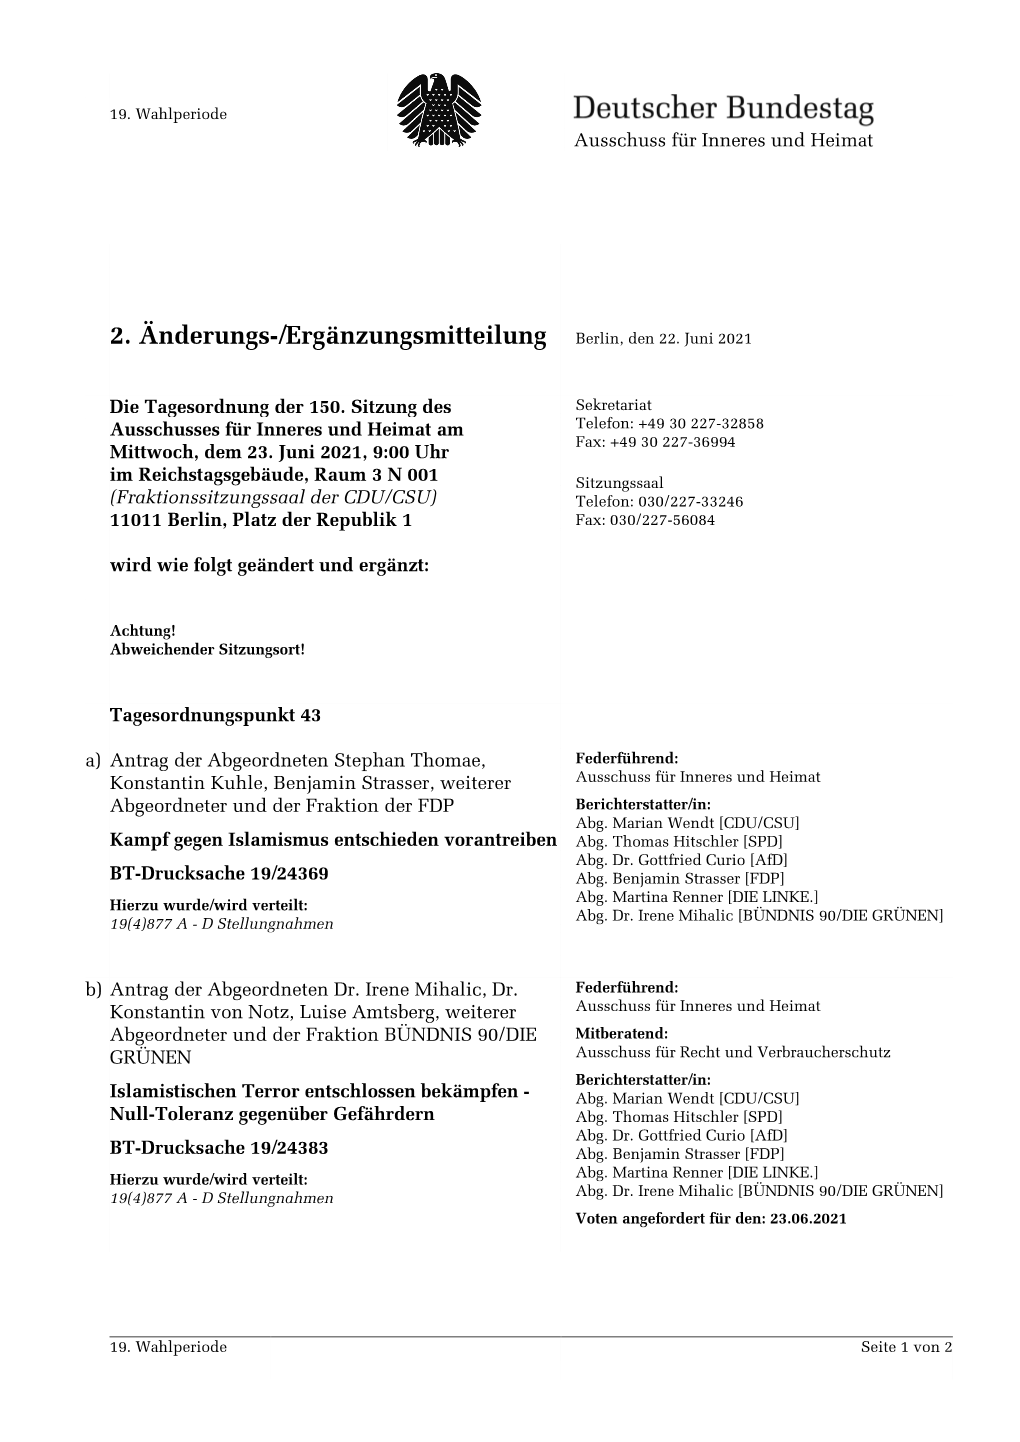 2. Änderungs-/Ergänzungsmitteilung Berlin, Den 22. Juni 2021